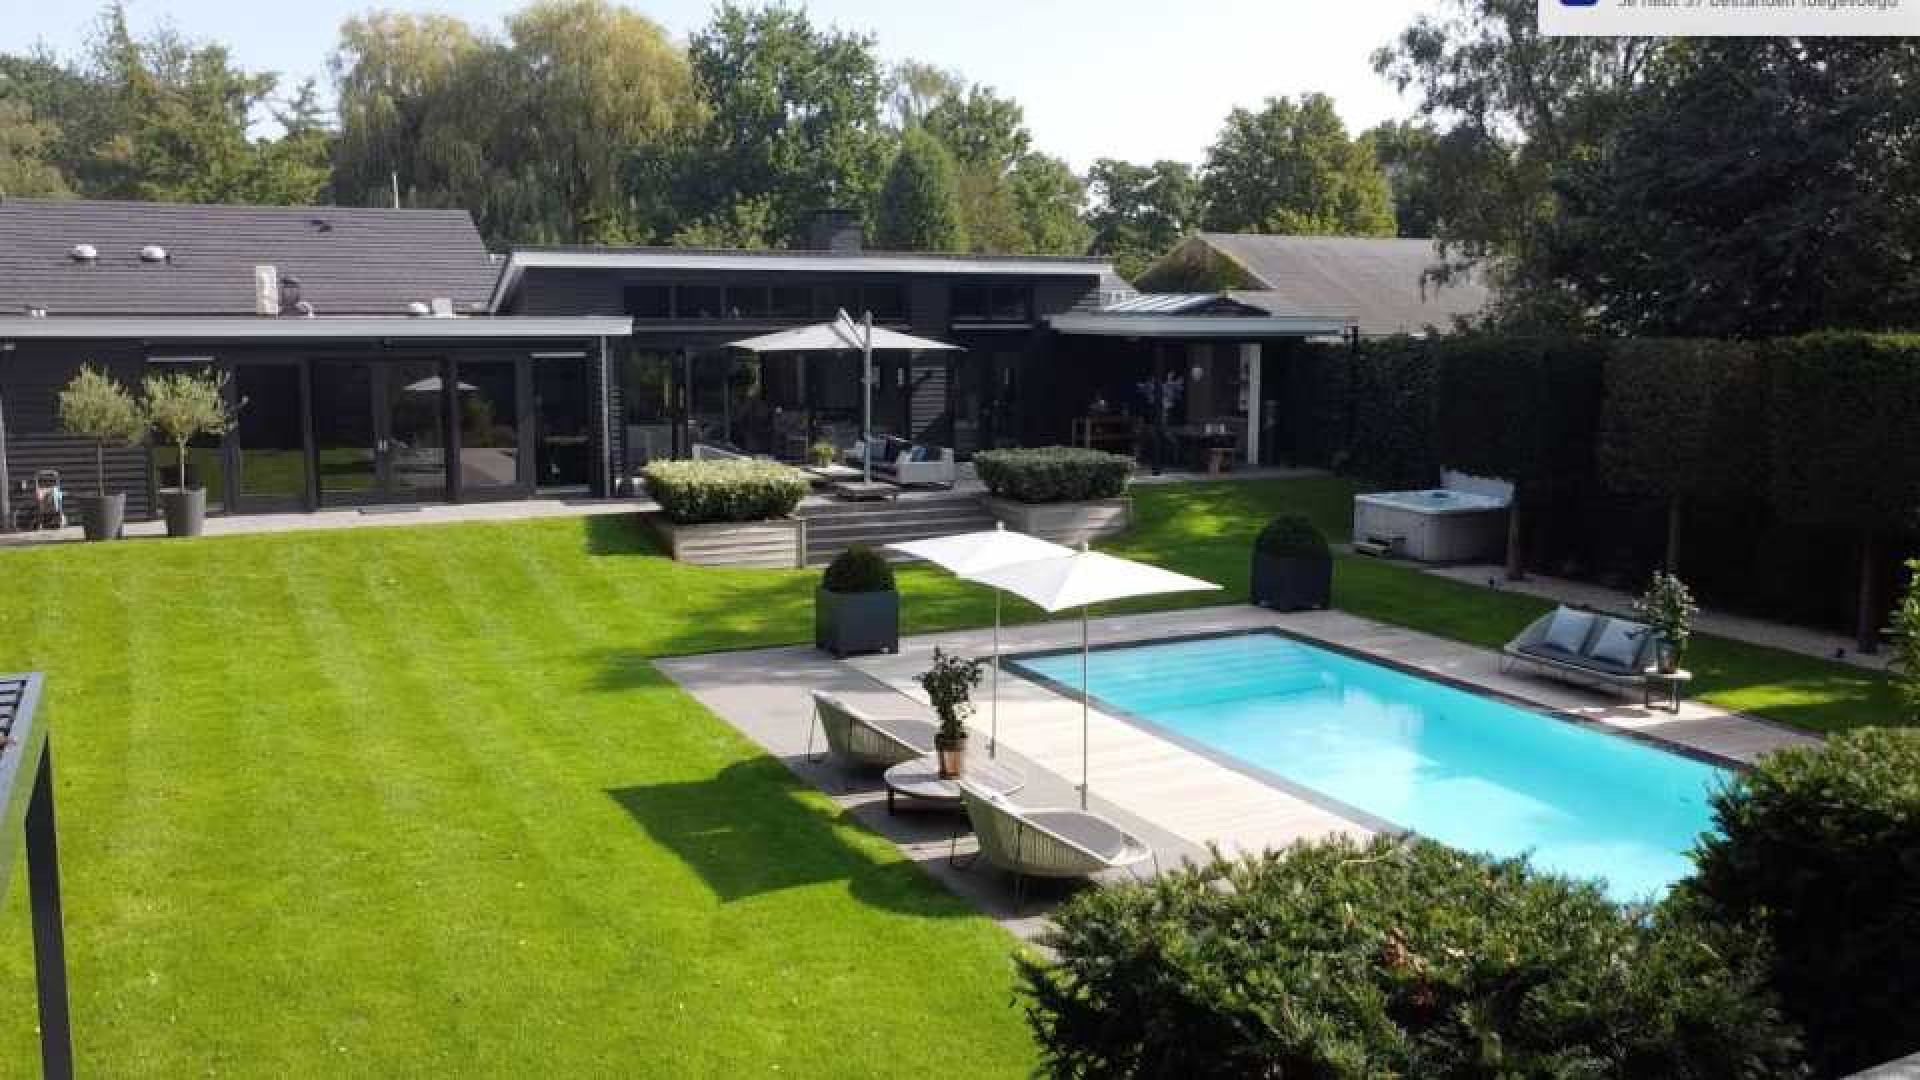 Ronald Koeman verkoopt gisteren zijn miljoenen villa in het Gooi zwaar boven de vraagprijs. Zie foto's